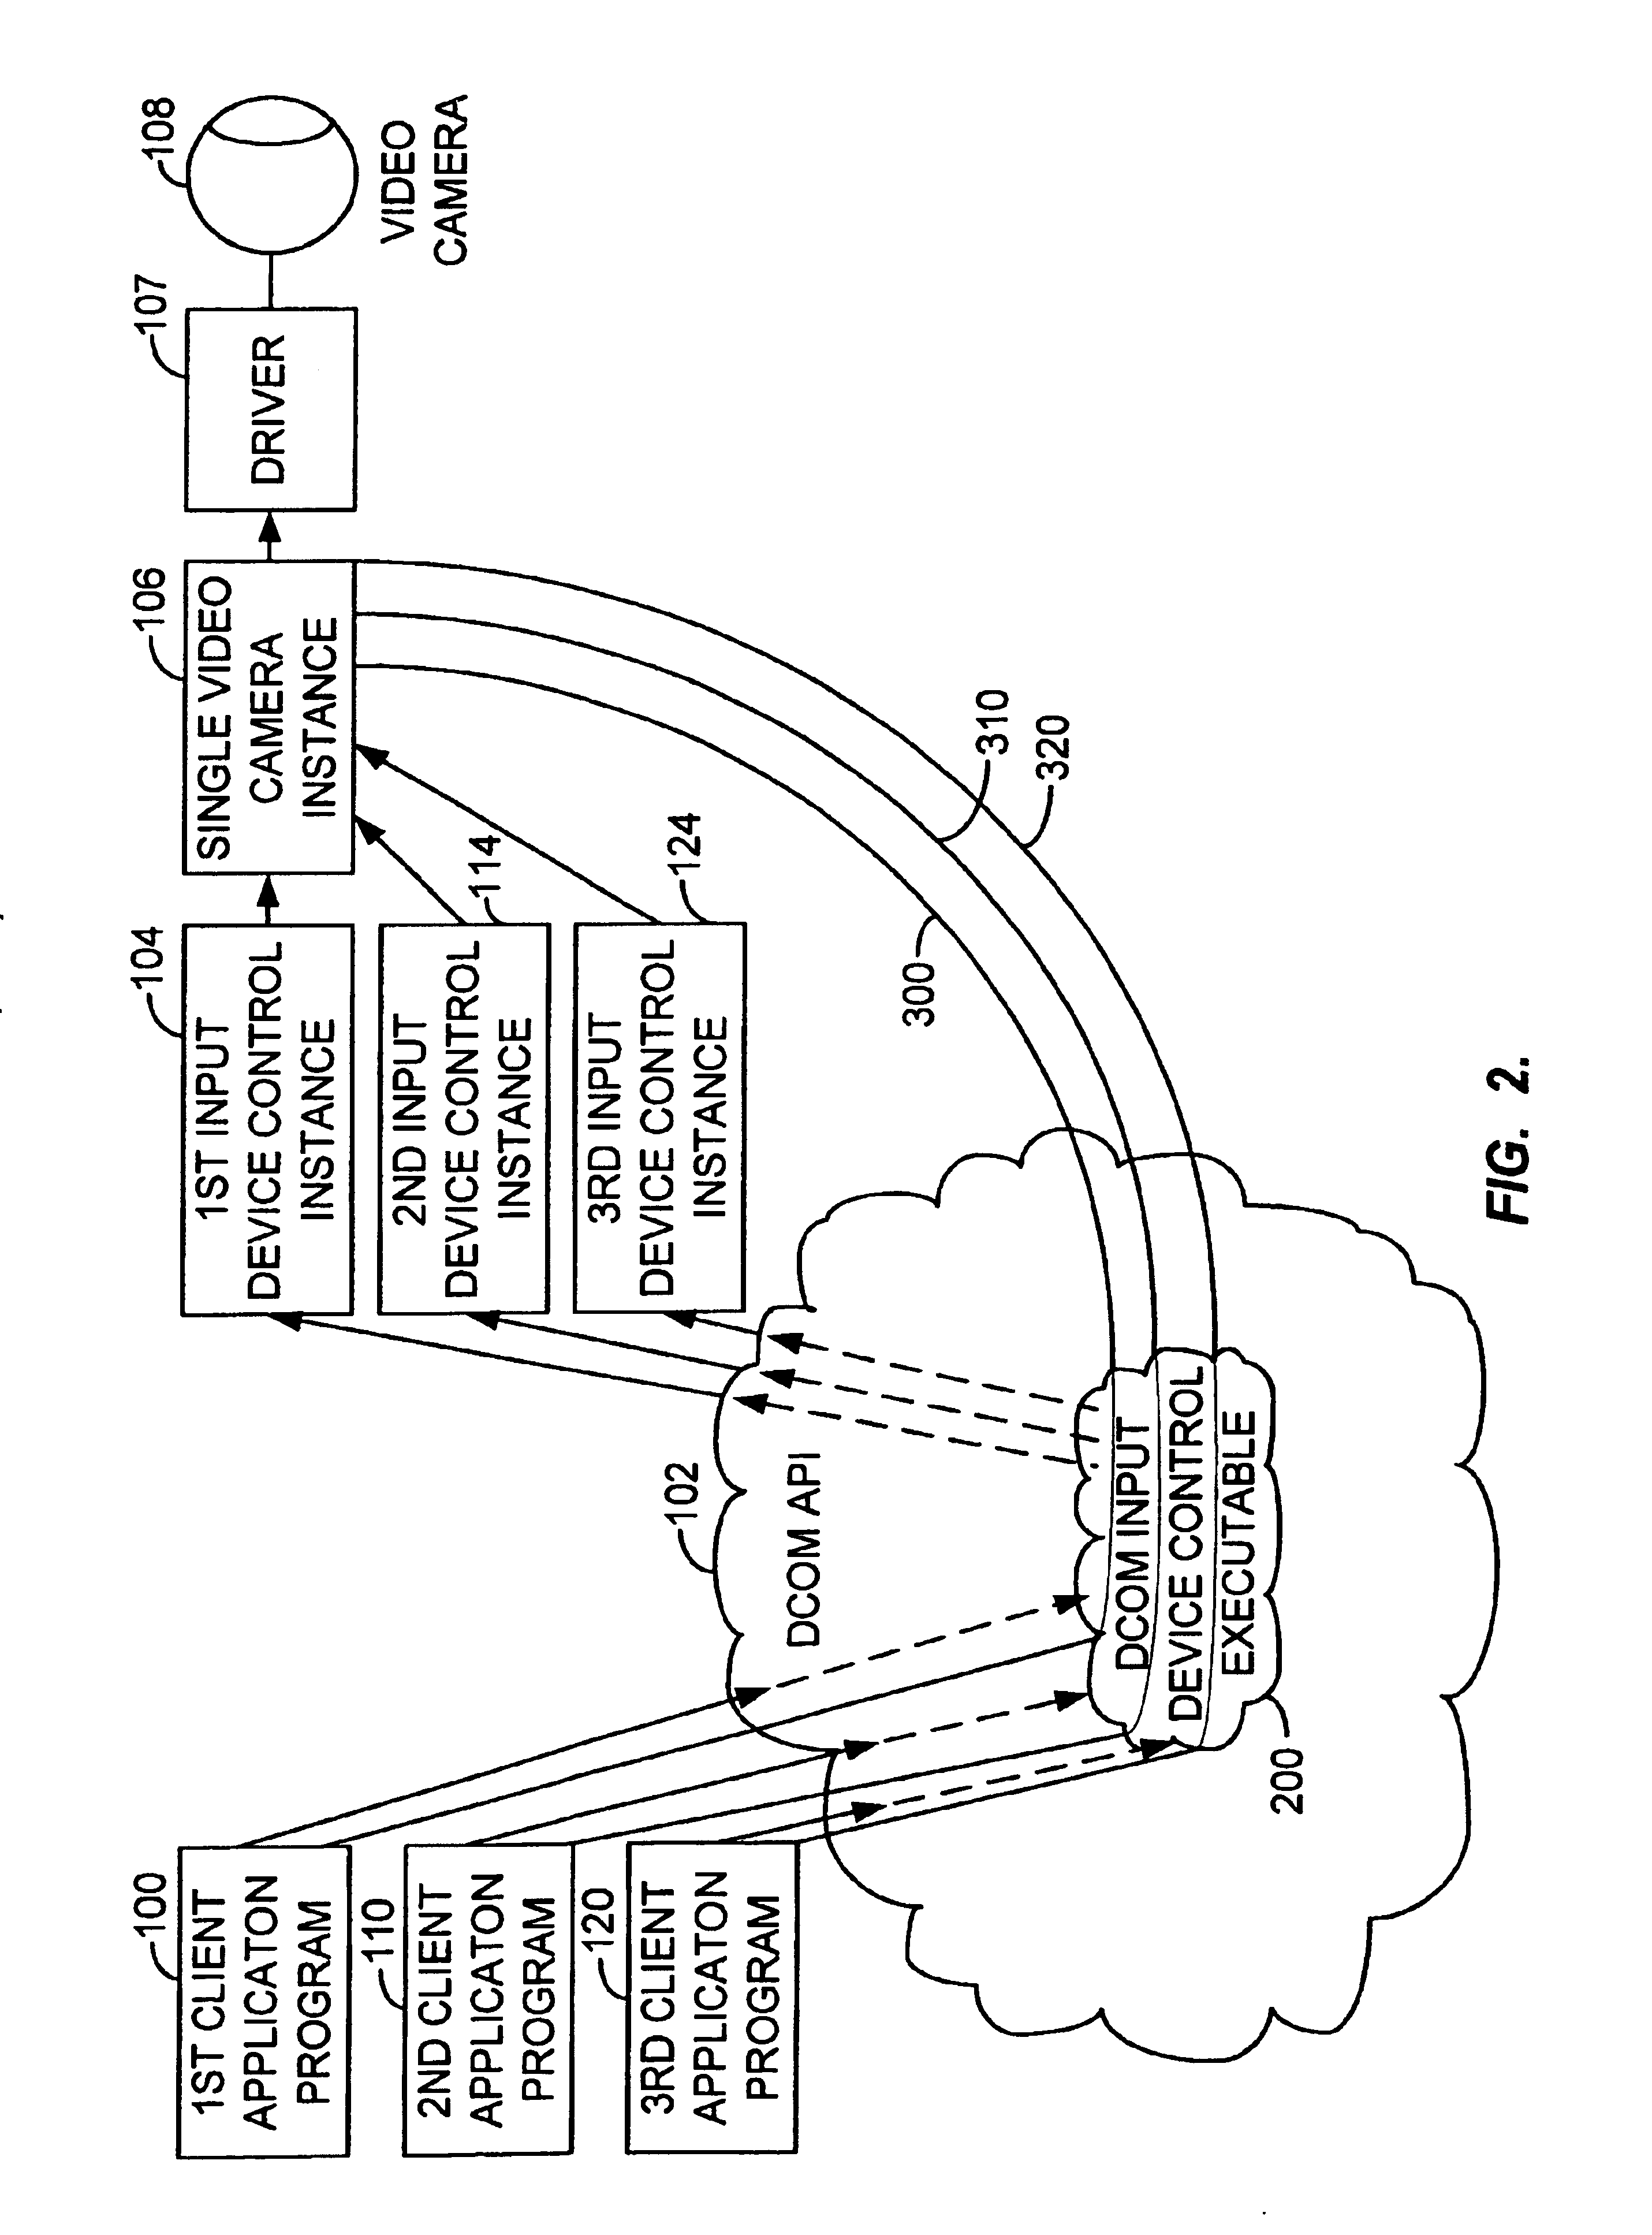 Multi-instance input device control